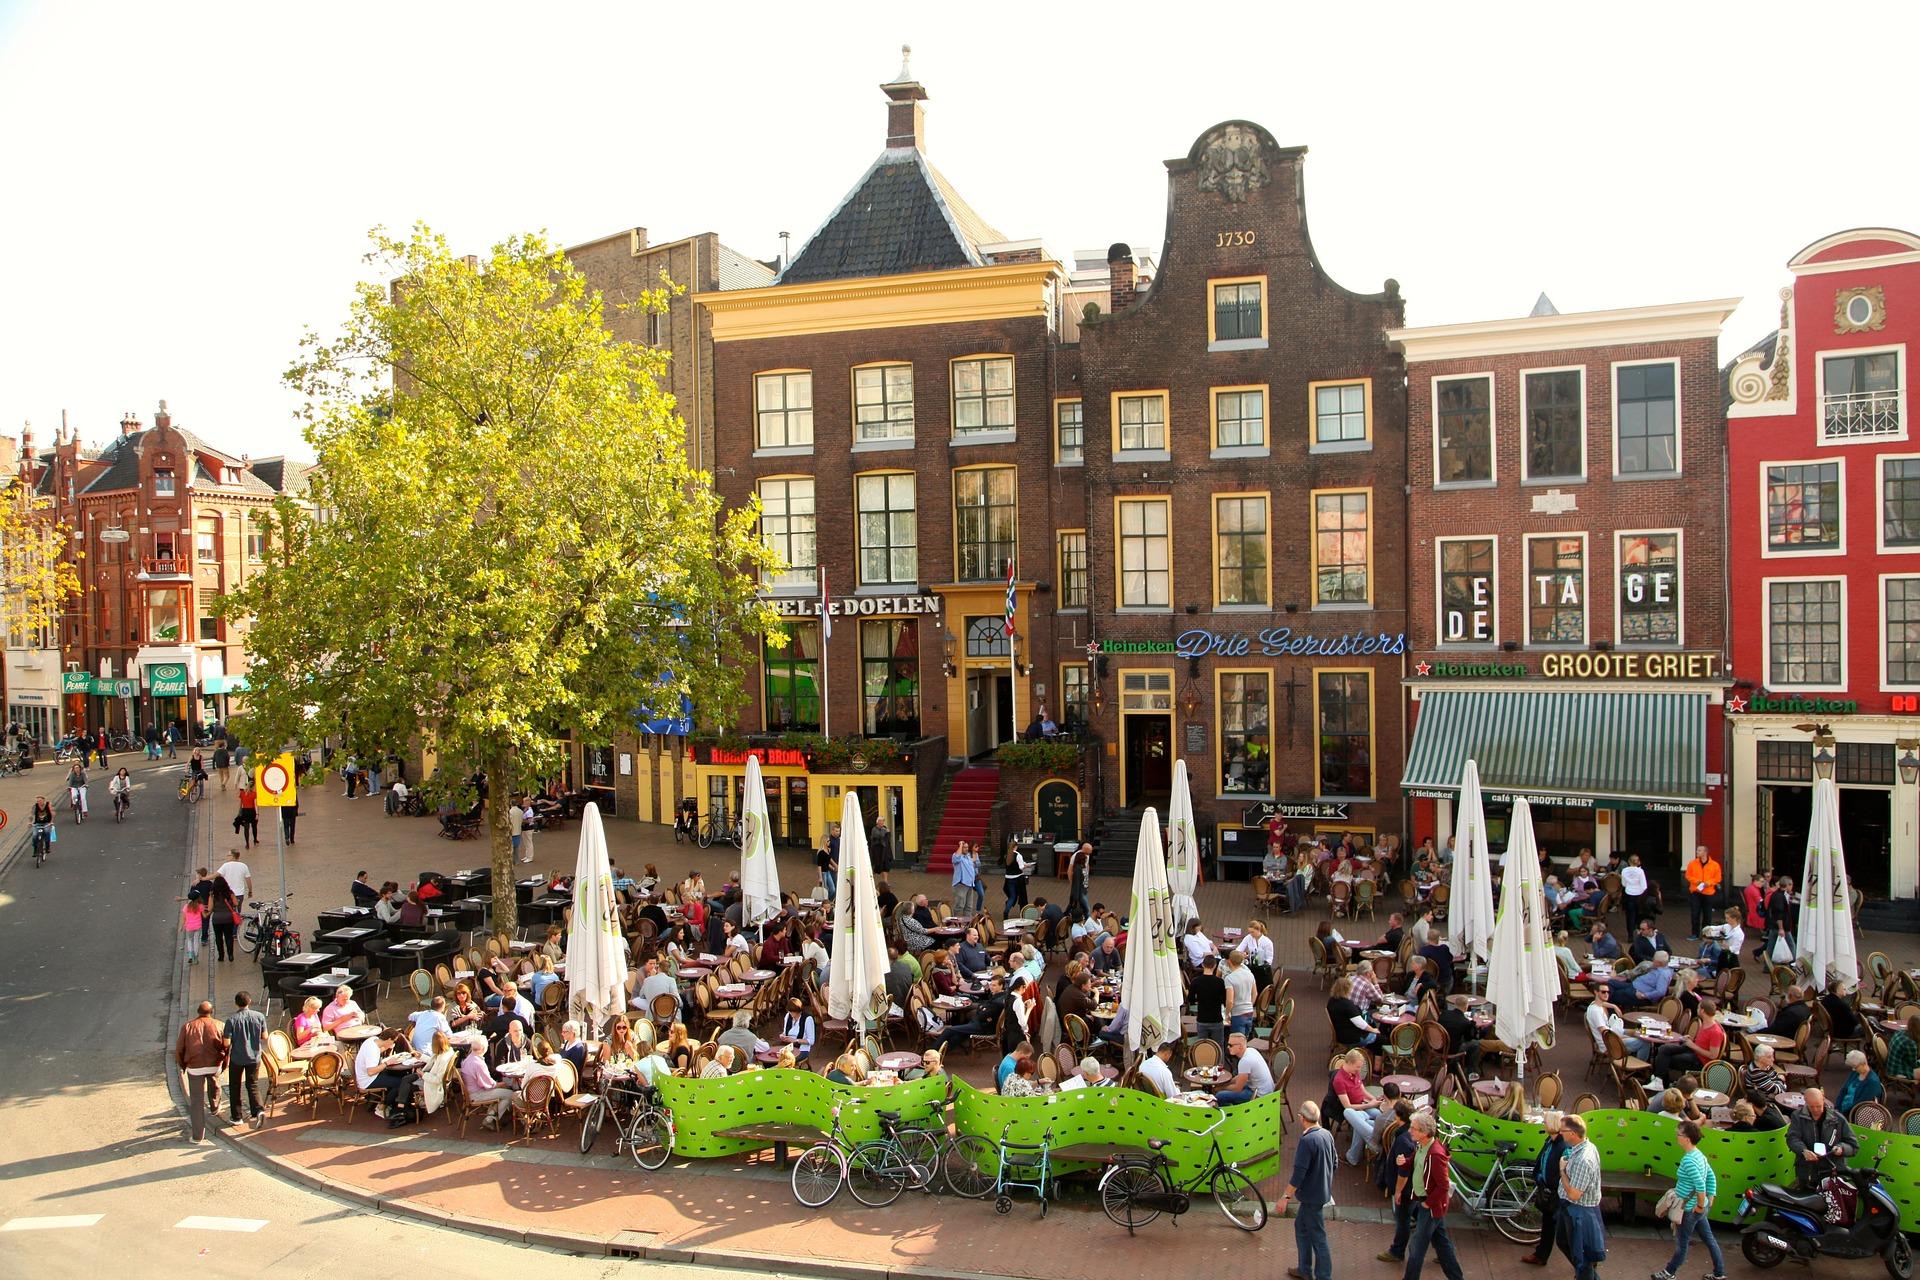 Studenci w Holandii chwalą sobie mieszkanie w Groningen, które jest dużym miastem akademickim